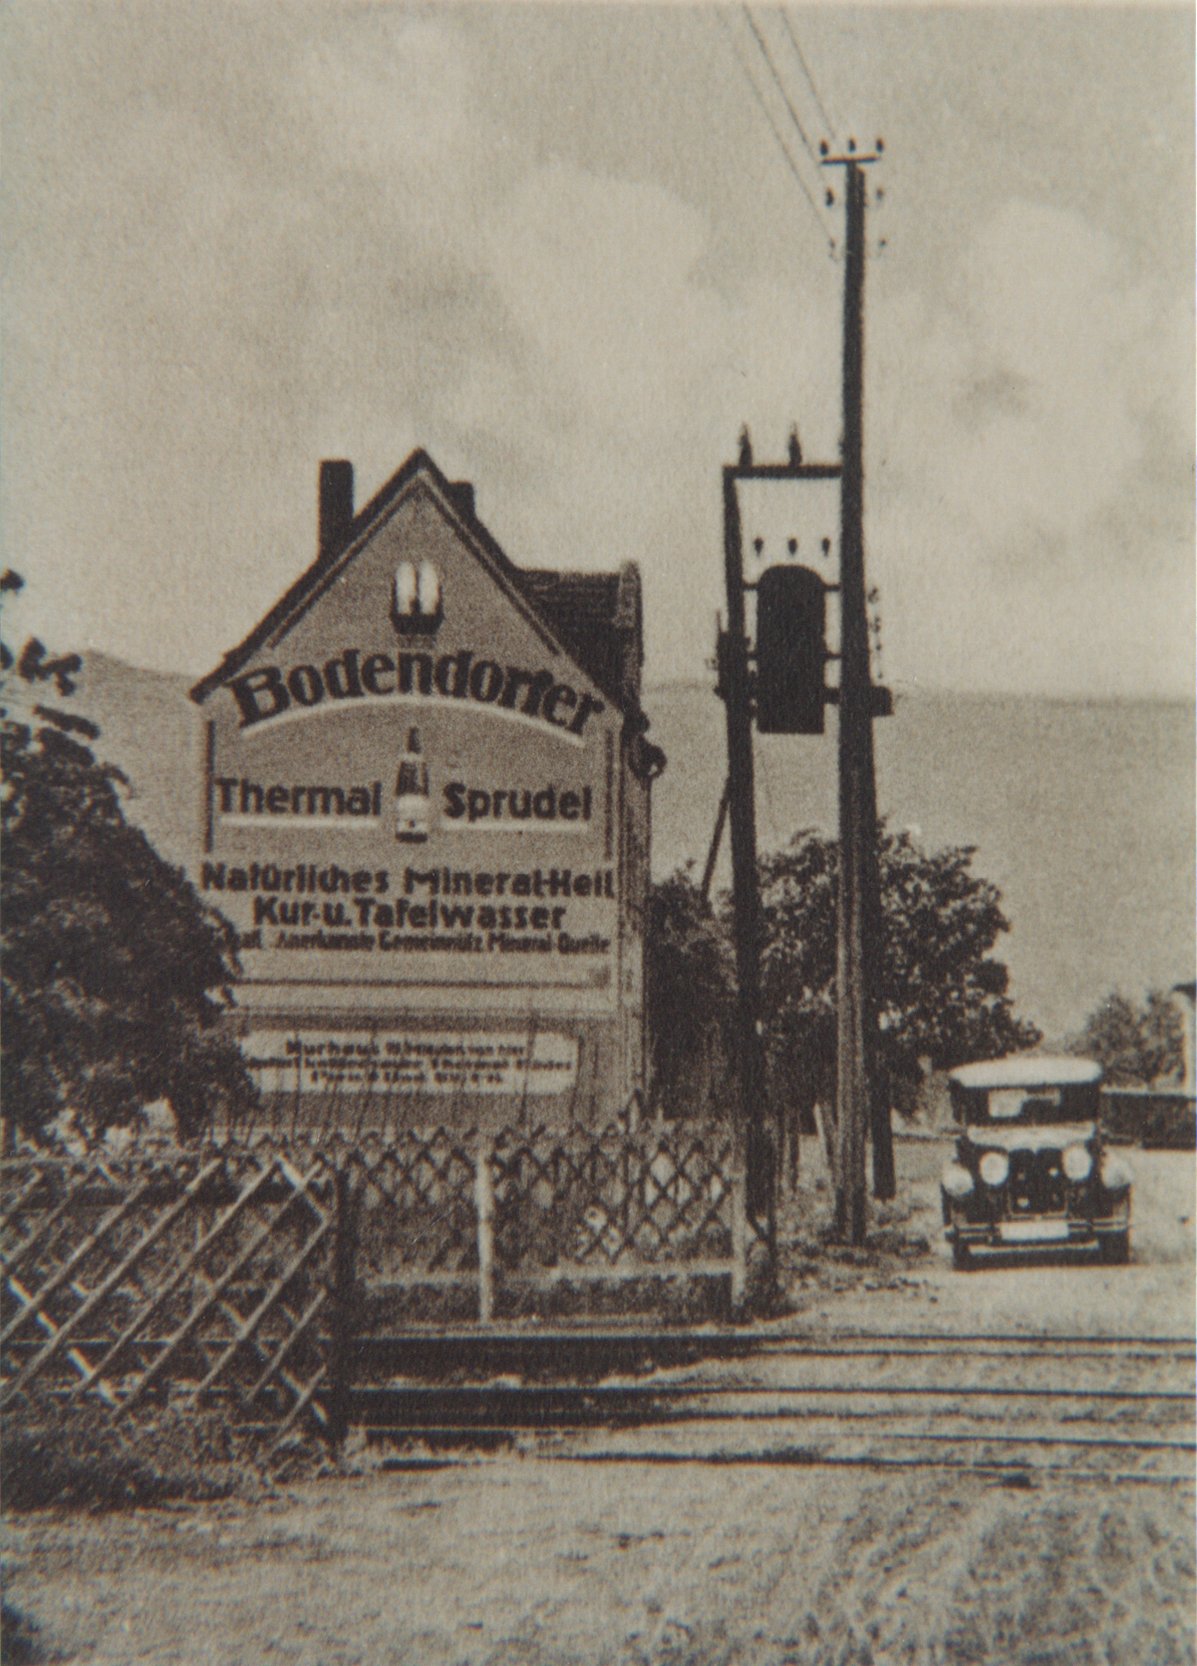 Werbung für den Bodendorfer Thermal-Sprudel auf einem Haus (Heimatarchiv Bad Bodendorf CC BY-NC-SA)